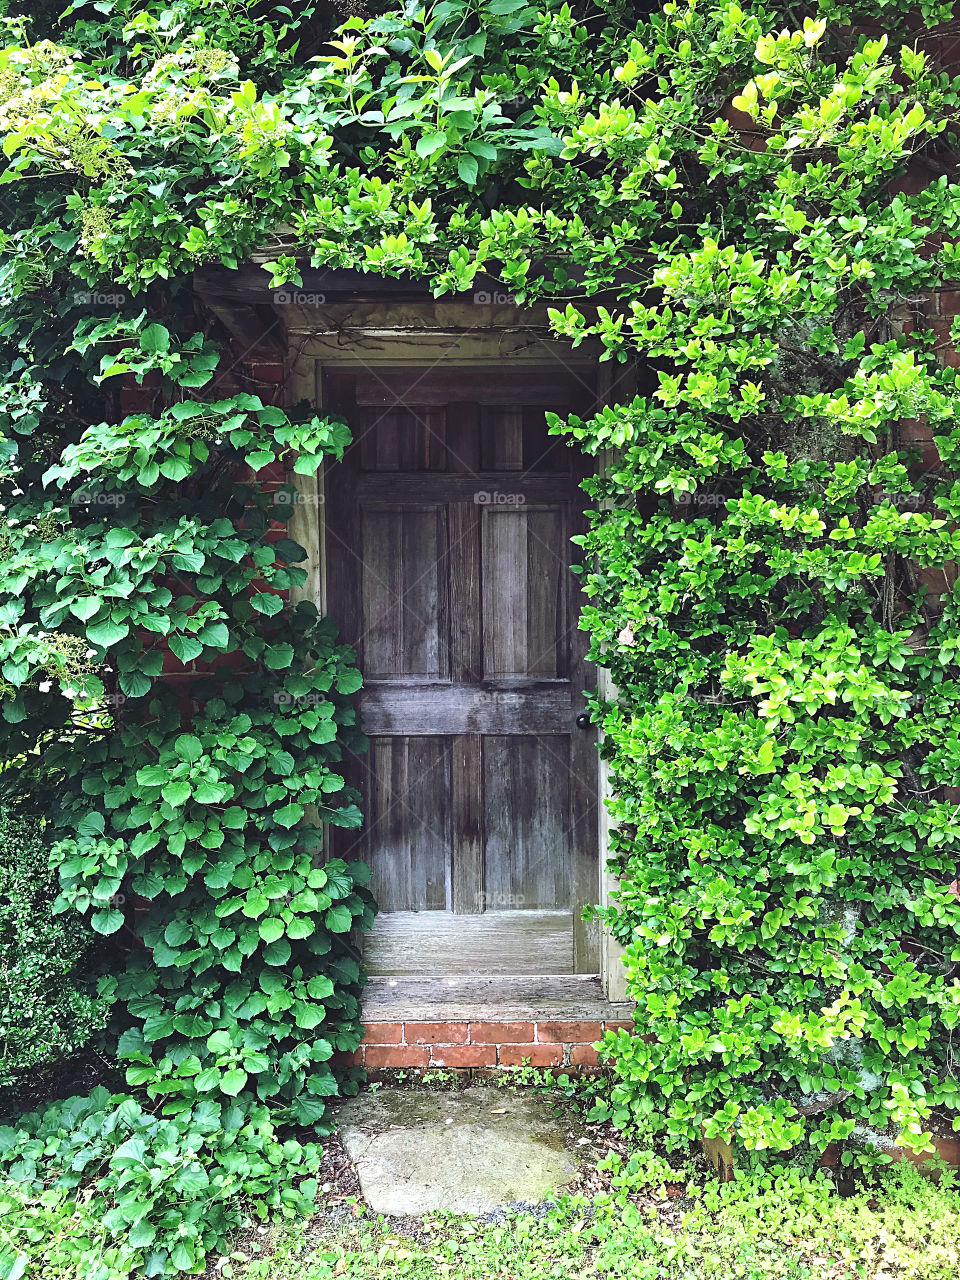 Door surrounded by green vines